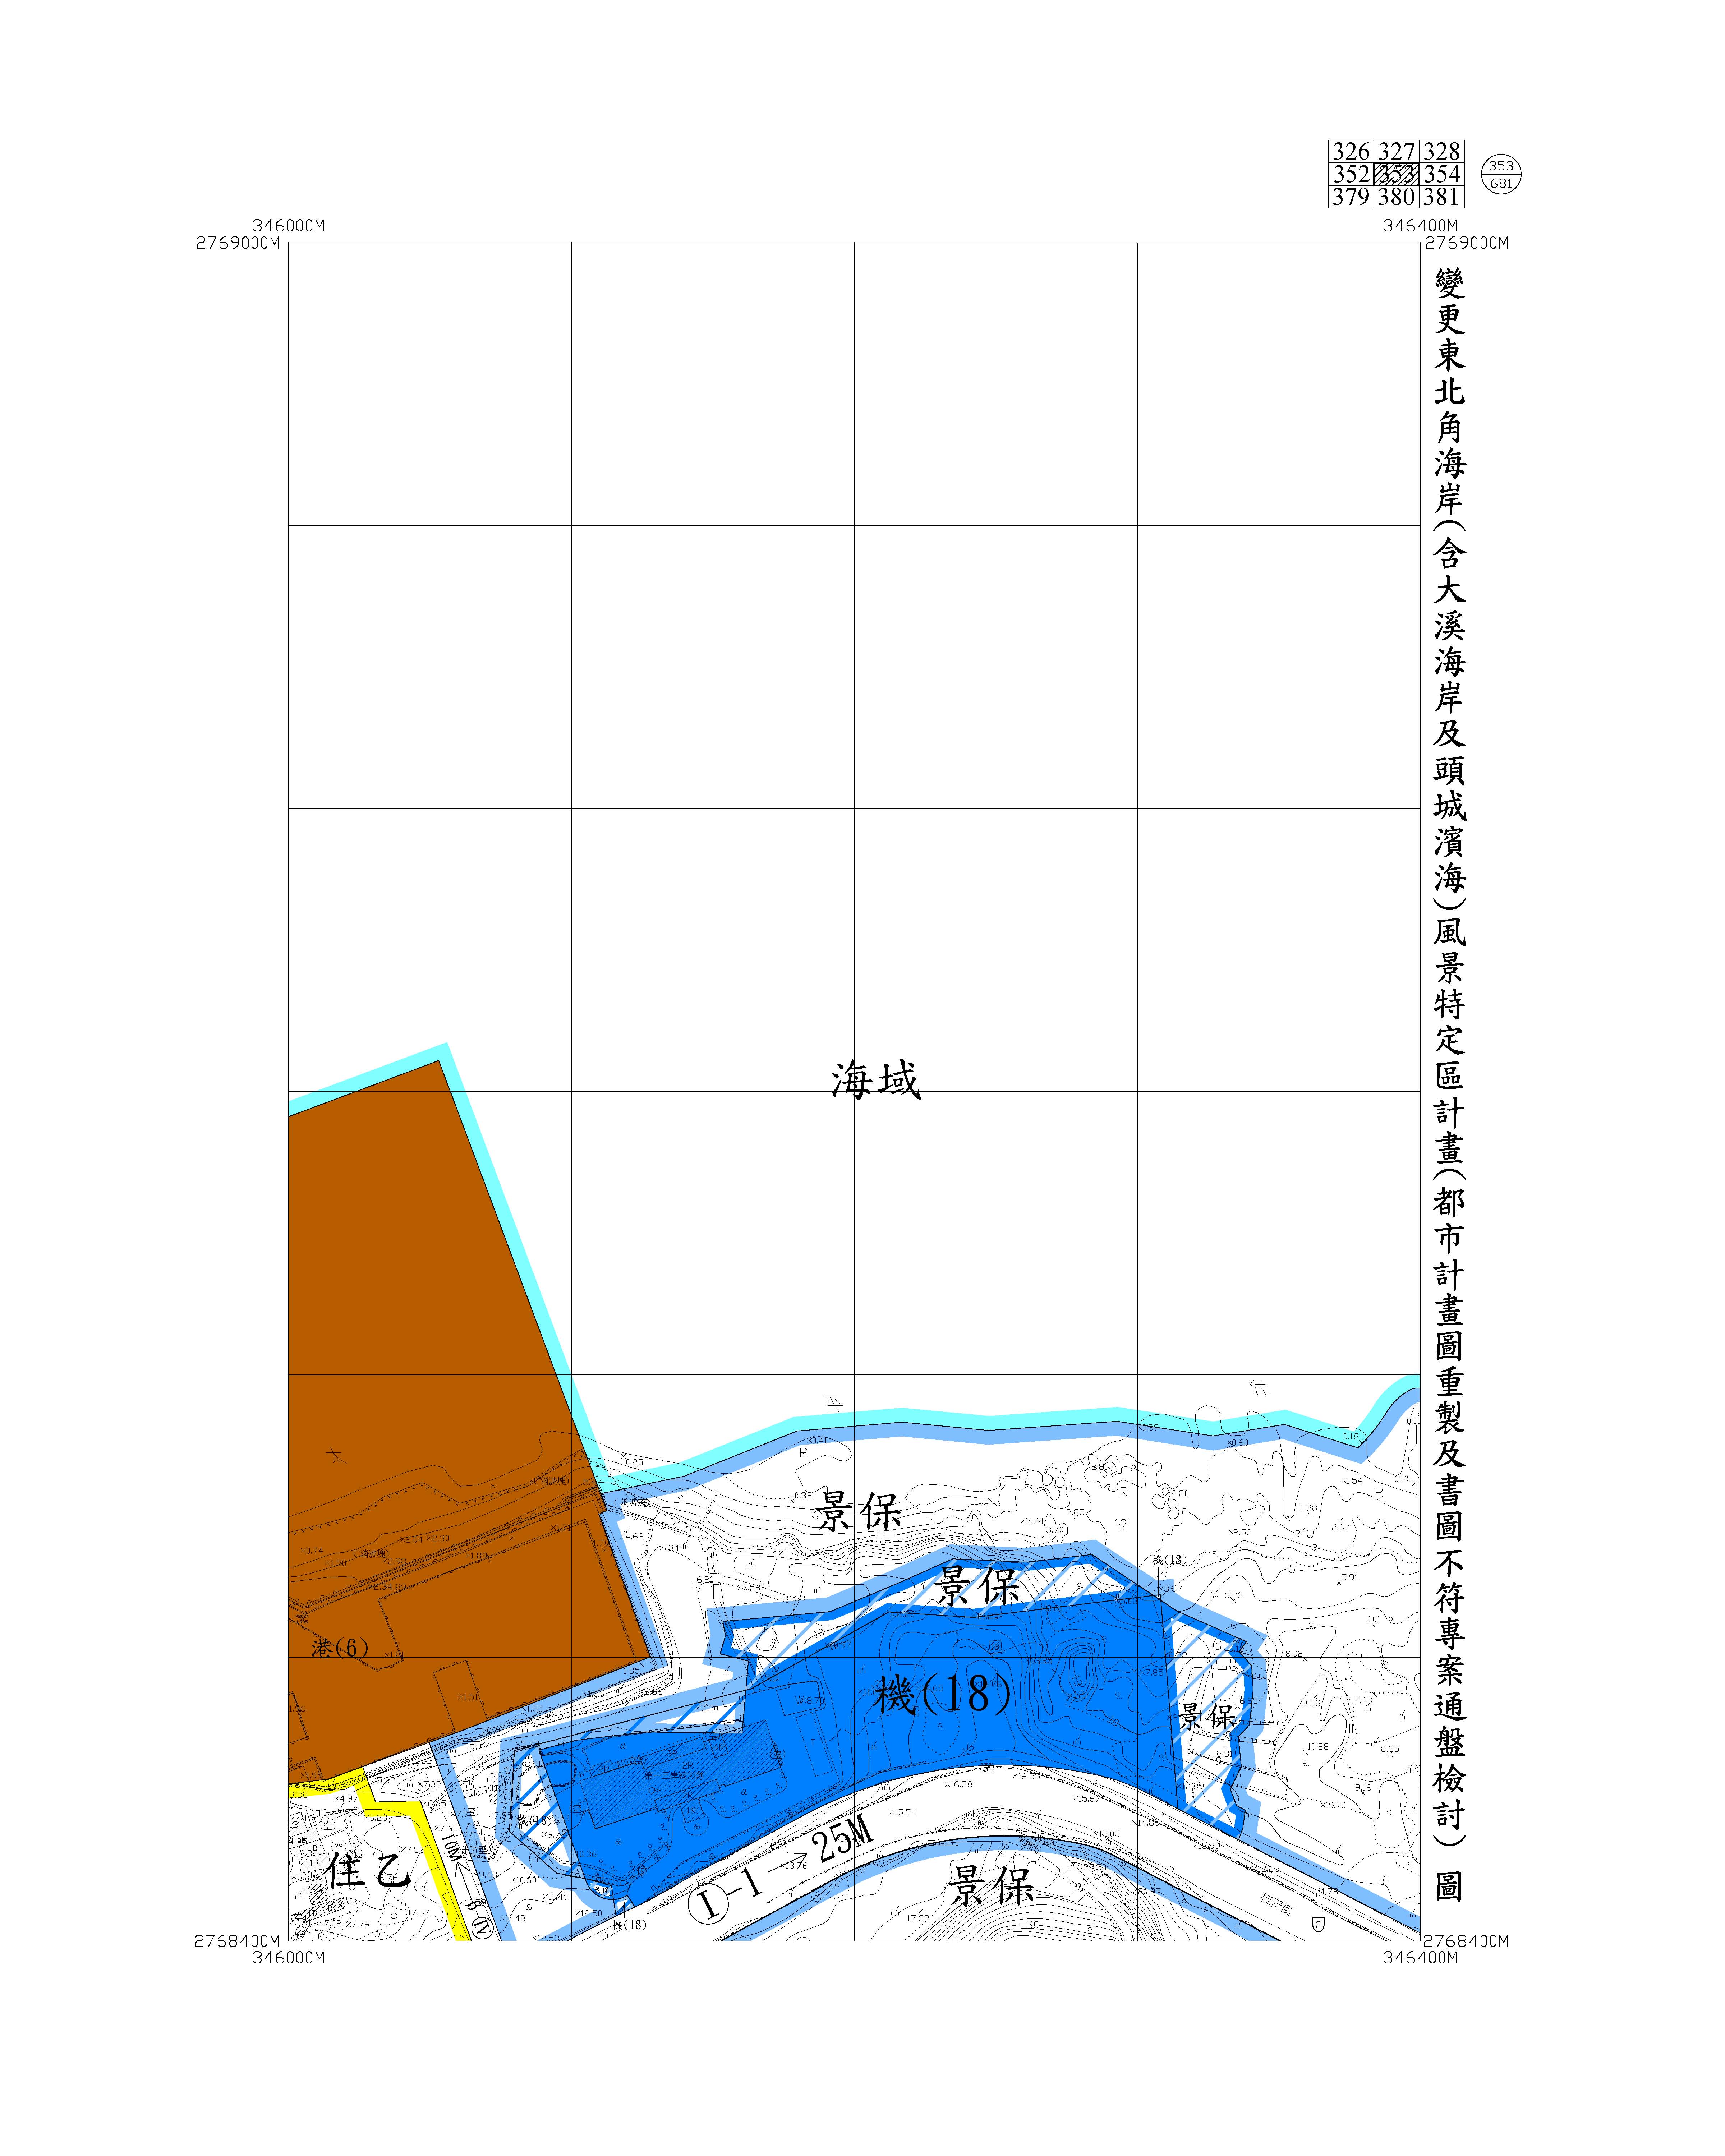 含大溪海岸及頭城濱海都市計畫圖重製及書圖不符專案通盤檢討圖資362